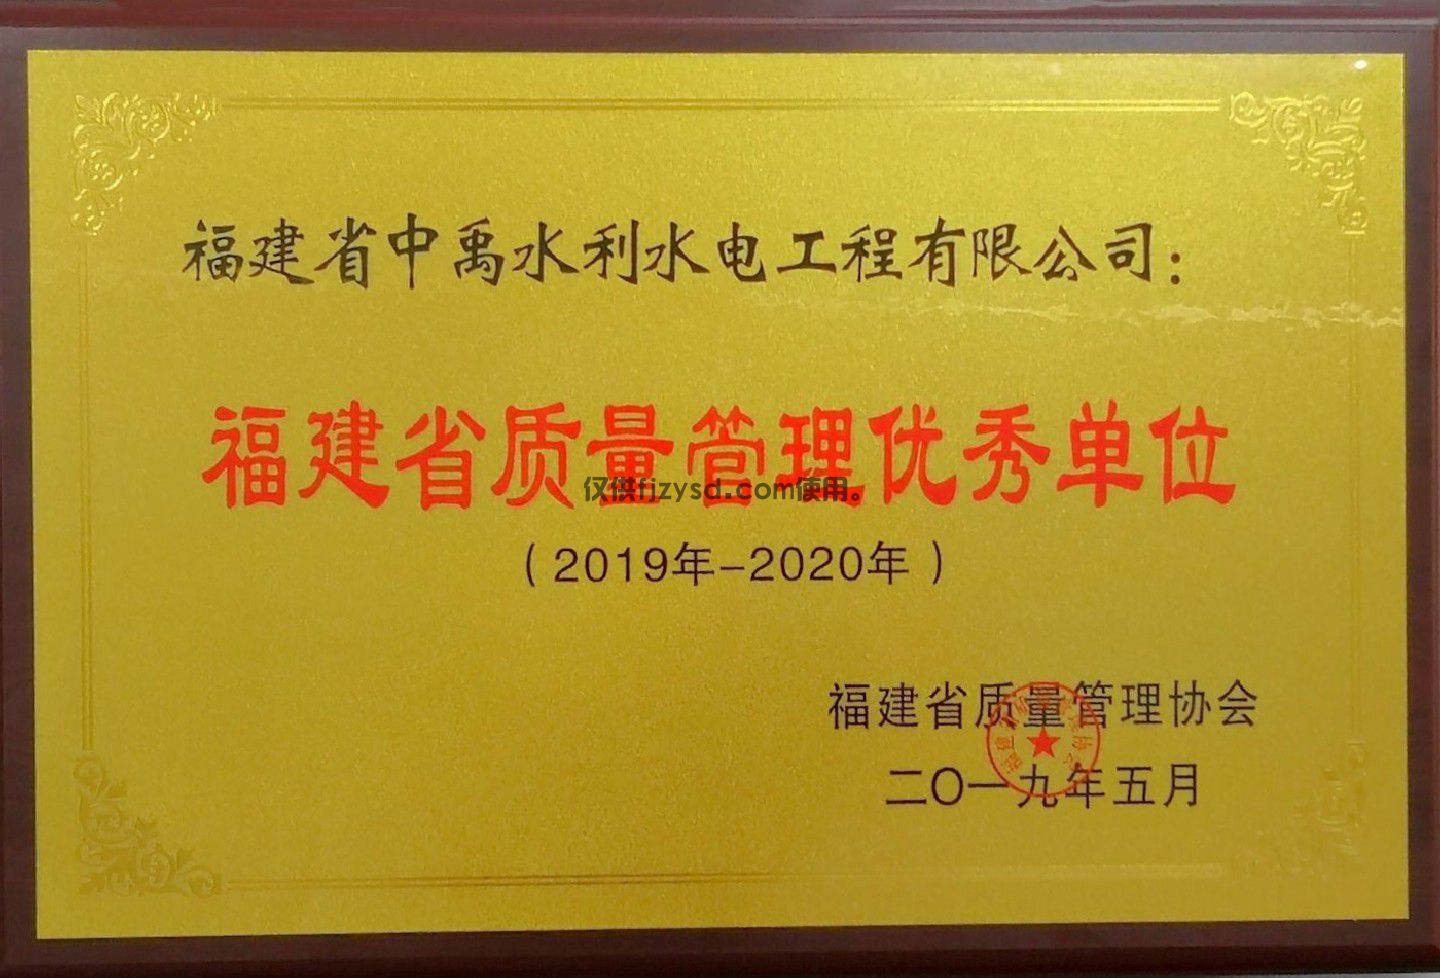 2019-2020年福建省质量管理优秀单位